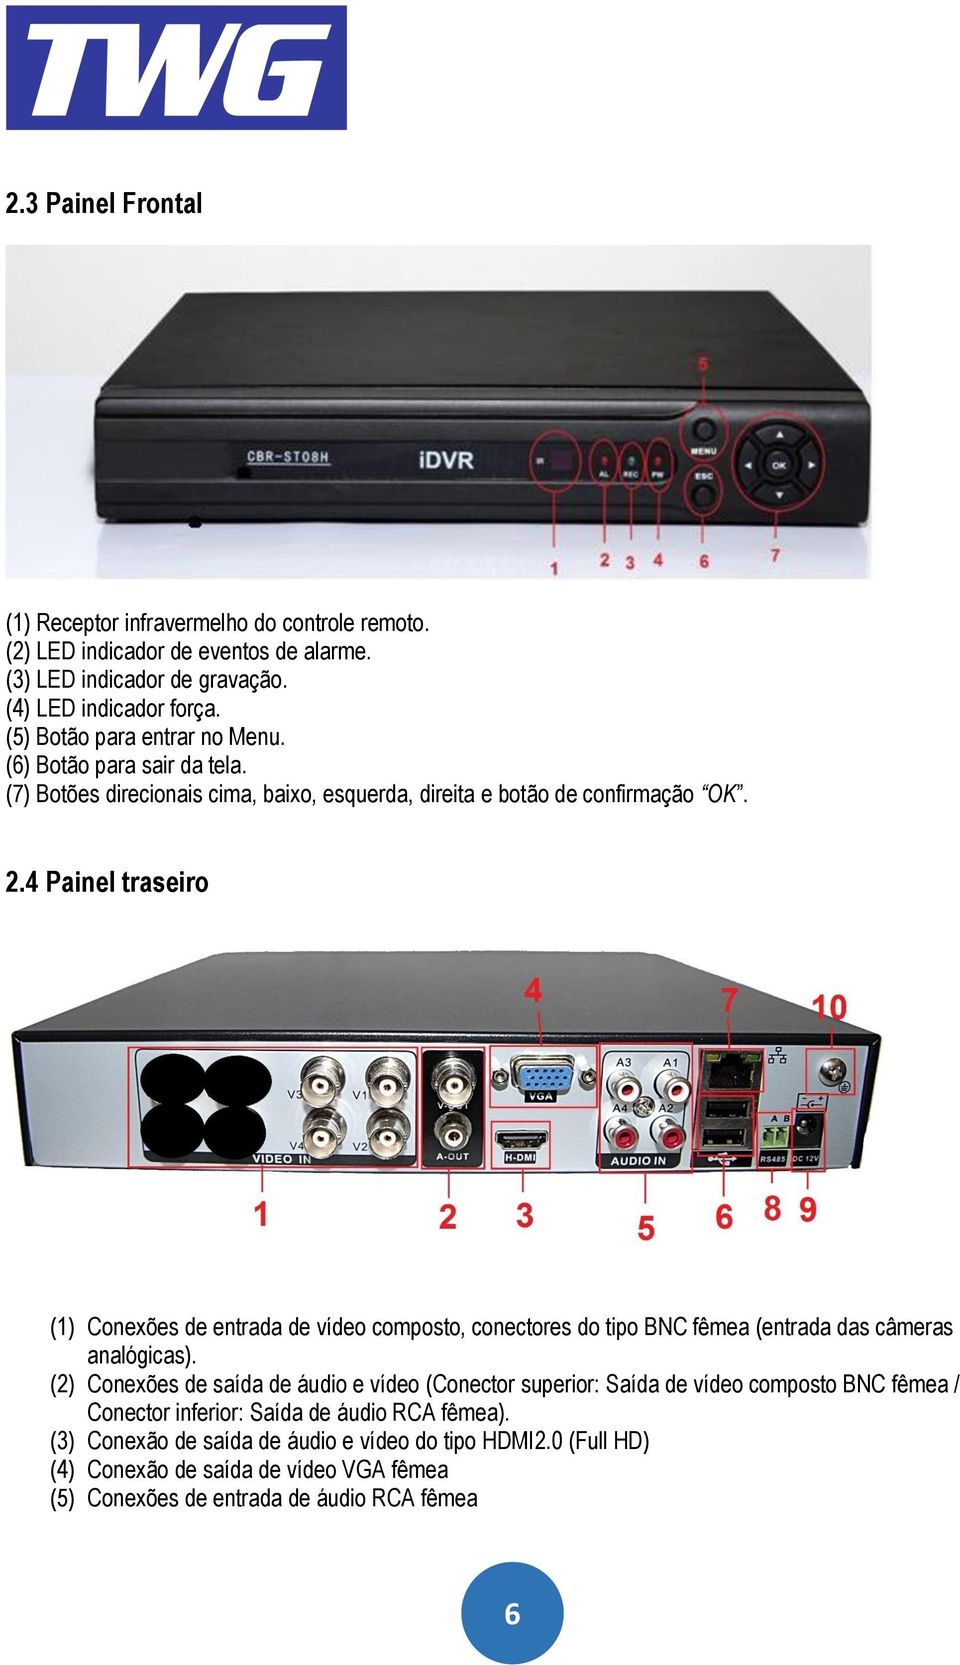 4 Painel traseiro (1) Conexões de entrada de vídeo composto, conectores do tipo BNC fêmea (entrada das câmeras analógicas).